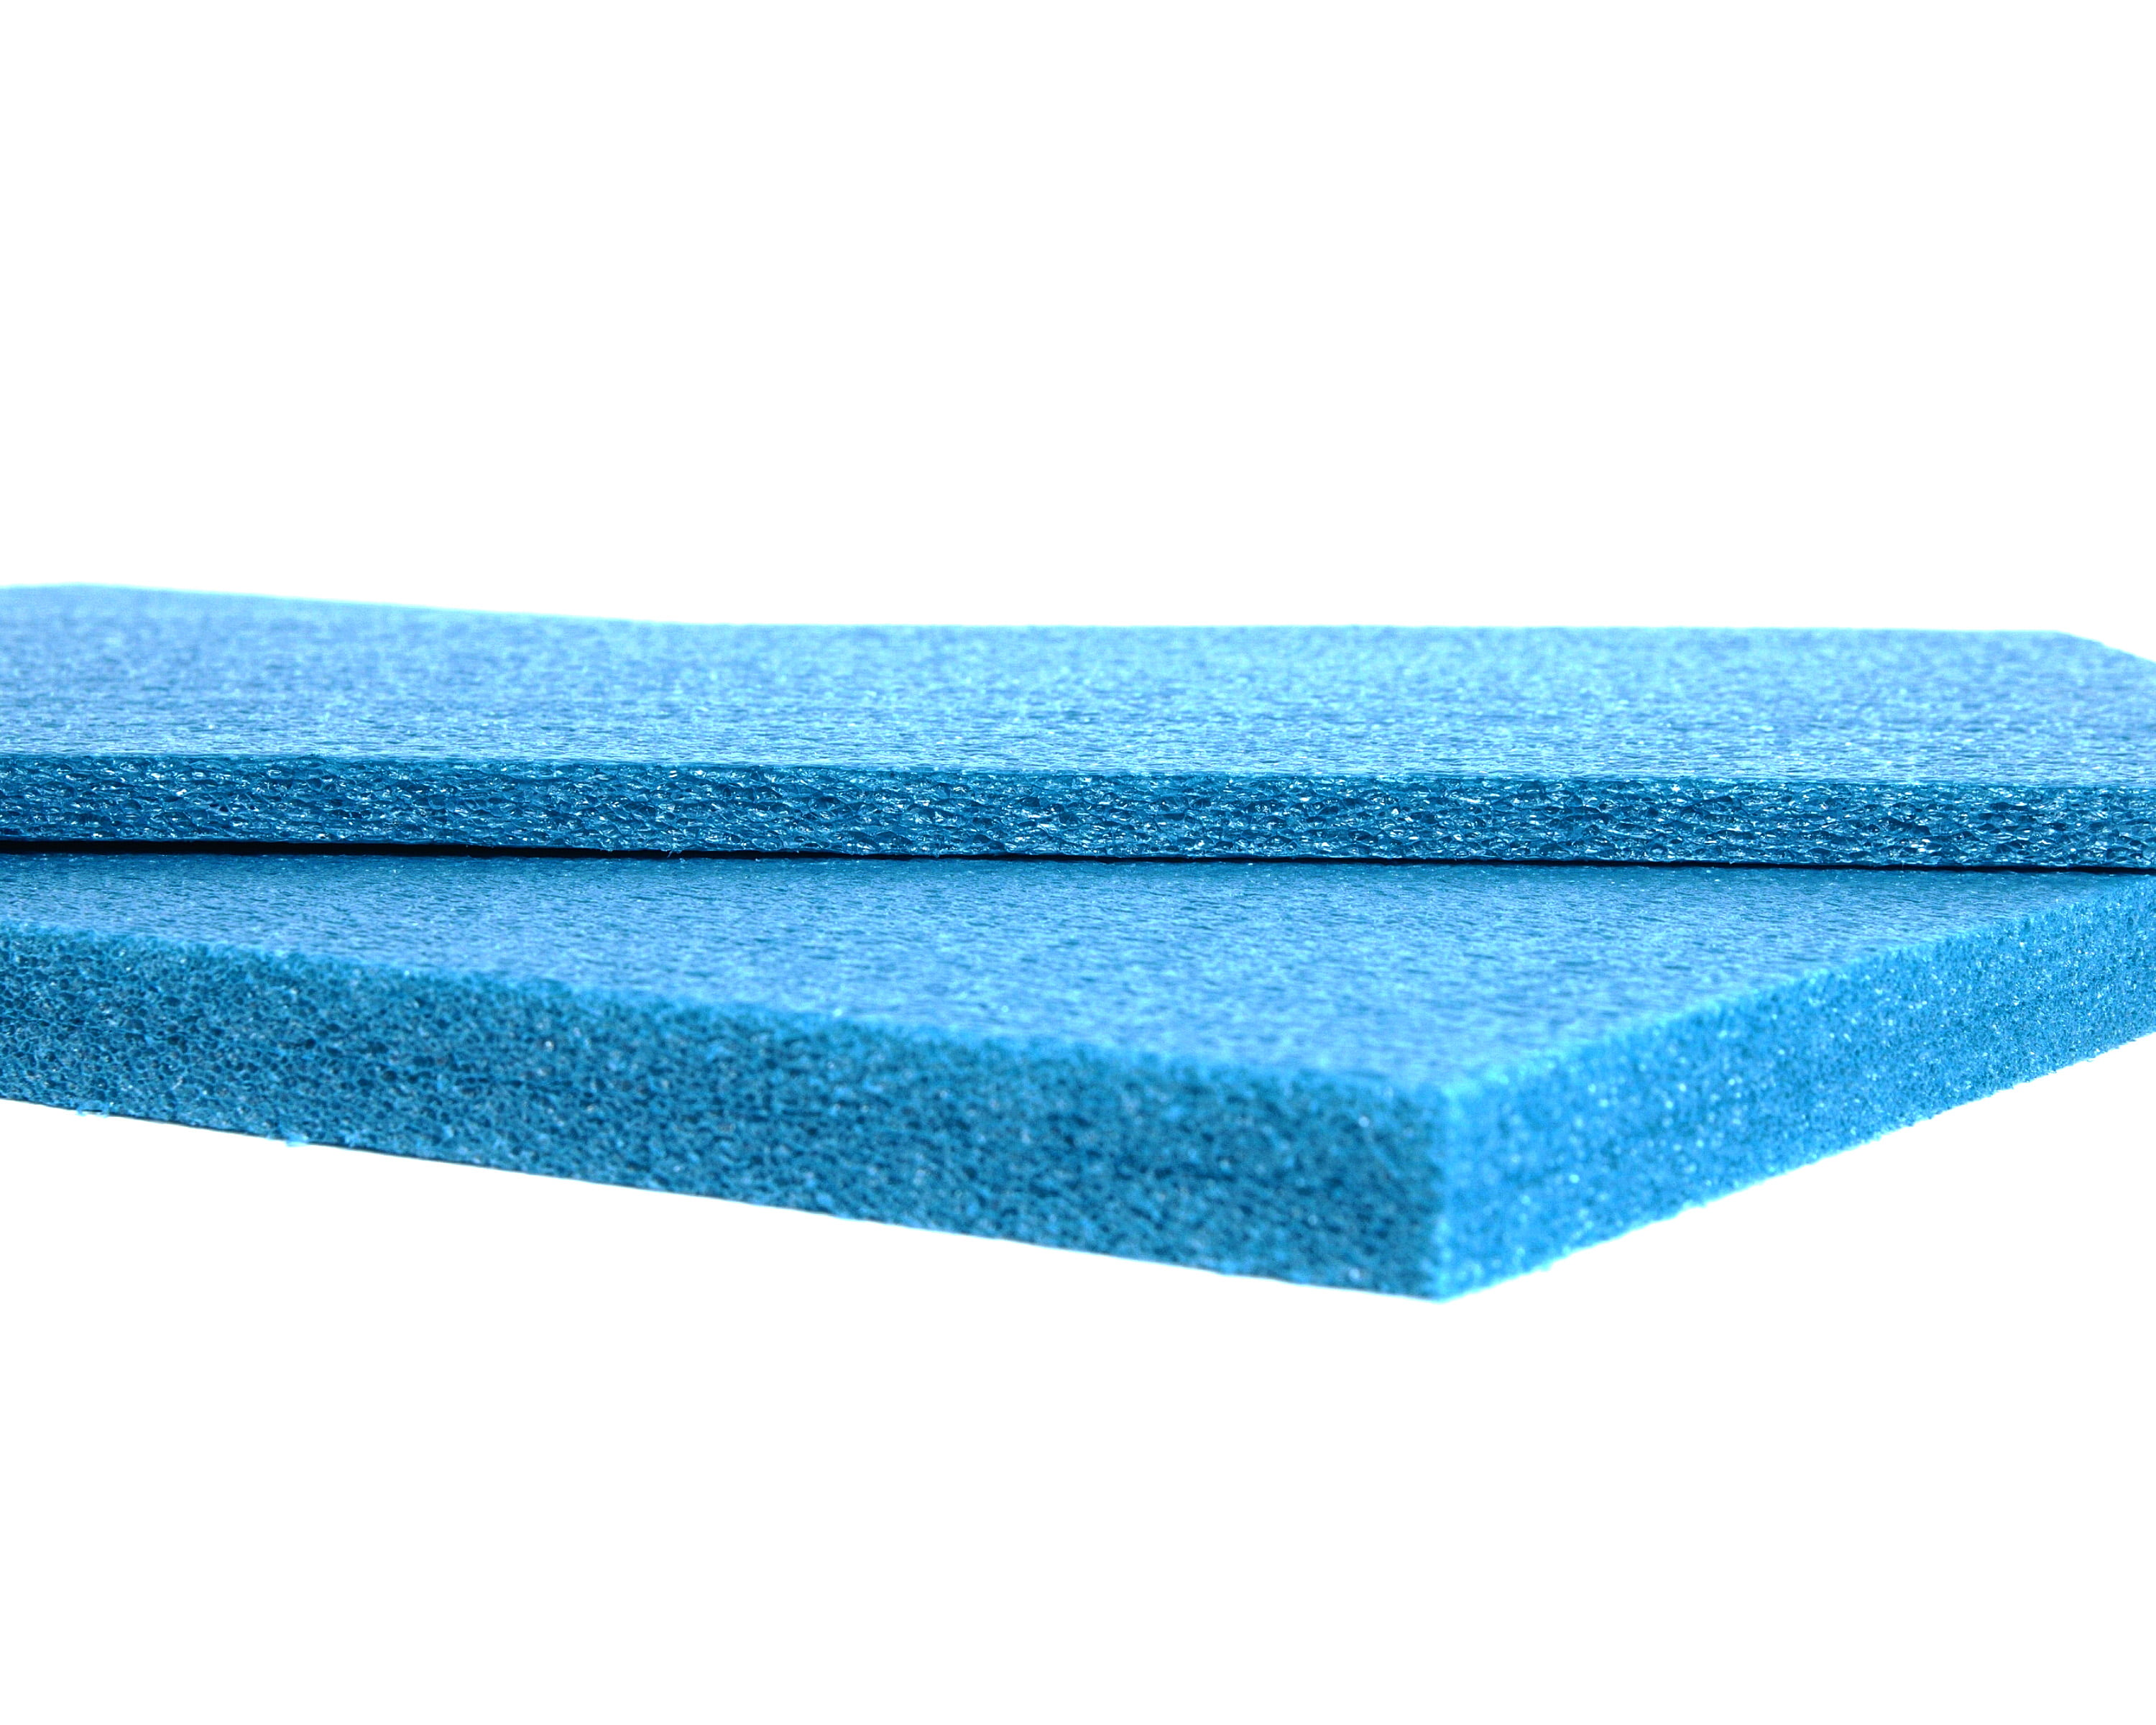 UnderPucks Mattress Sag Repair System  UnderPucks® fixes a sagging  mattress fast. It's an affordable mattress …